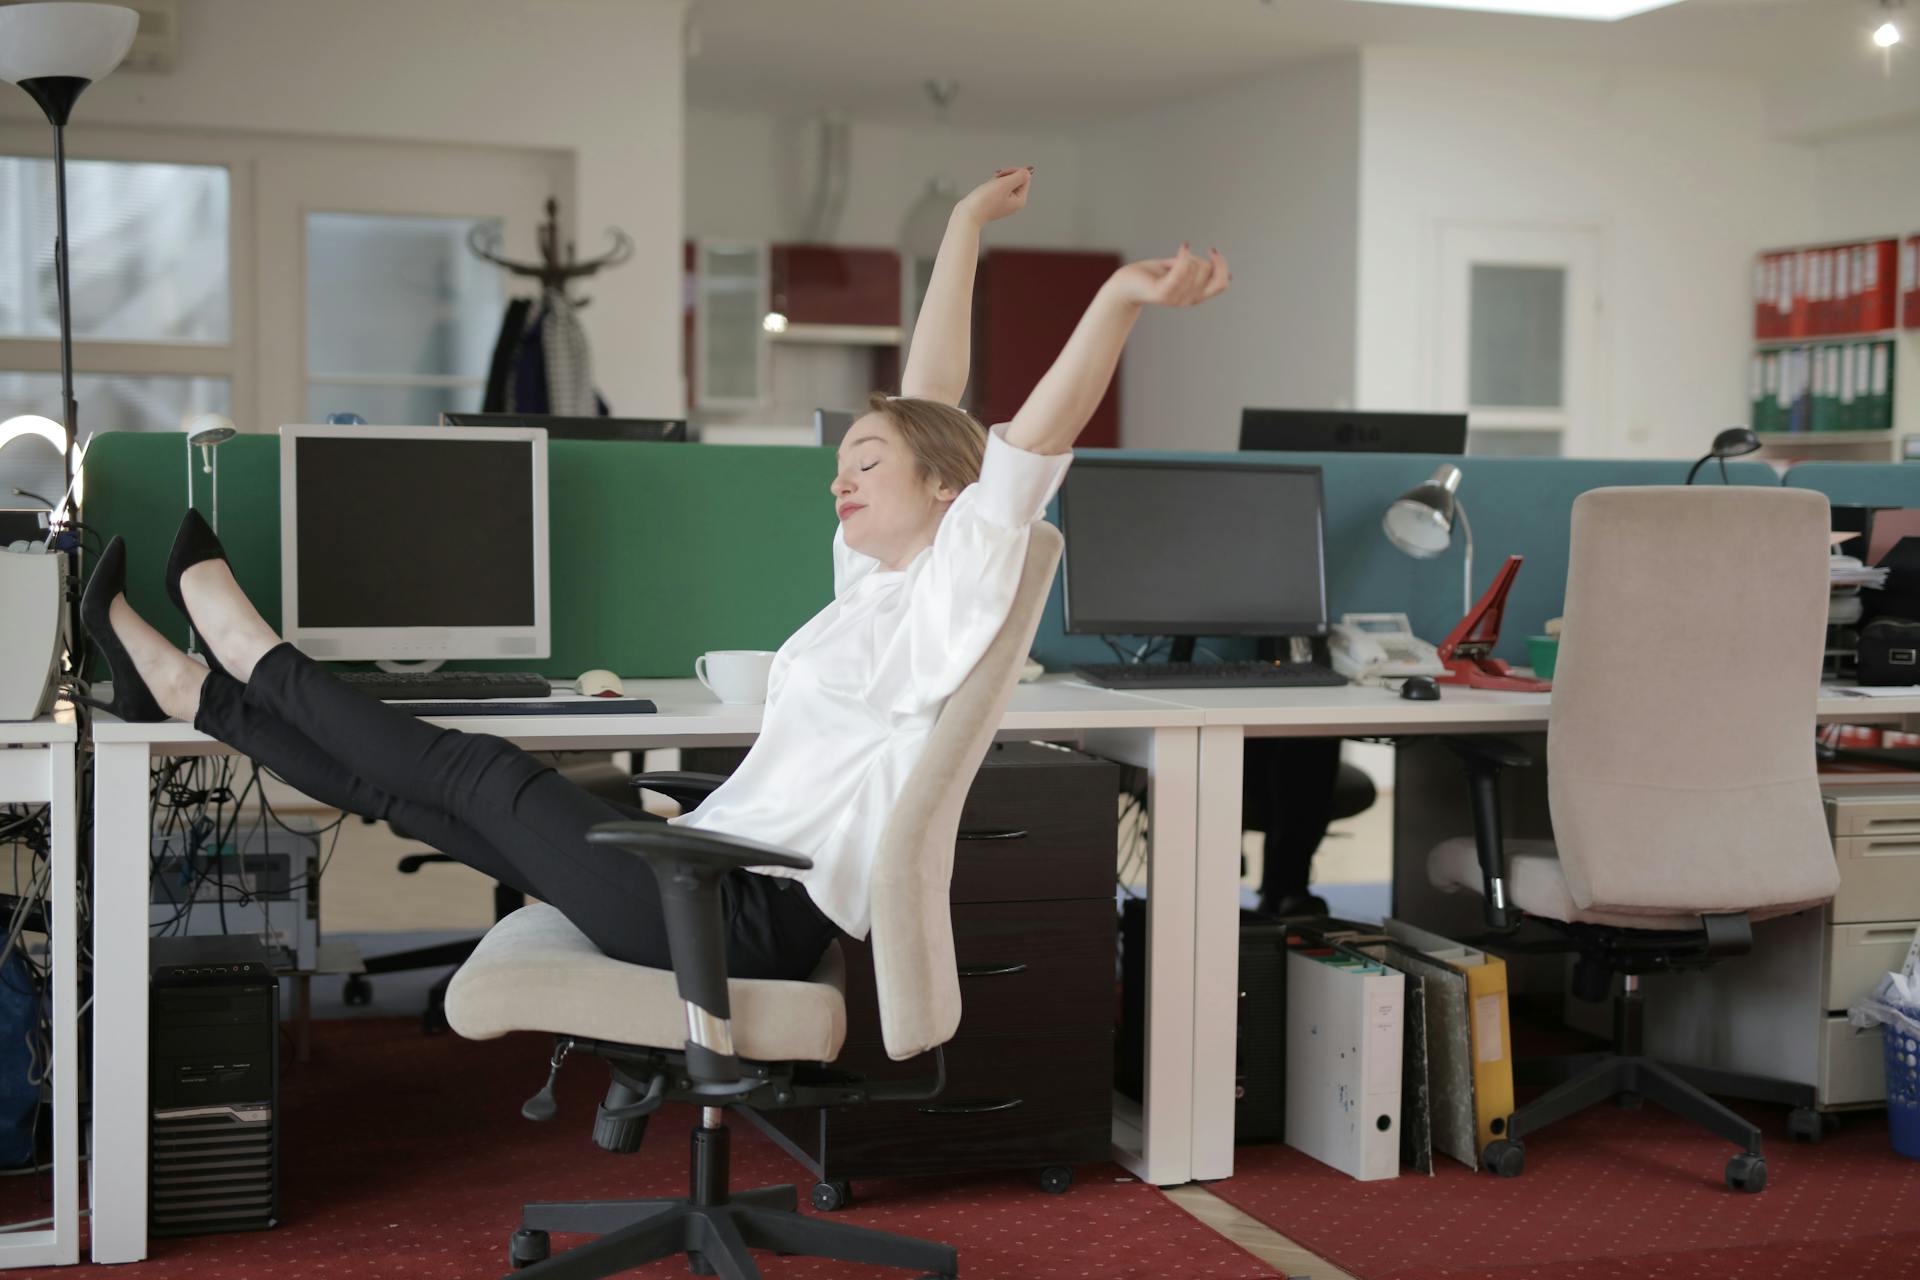 Une employée de bureau se détend avec ses pieds sur la table | Source : Pexels